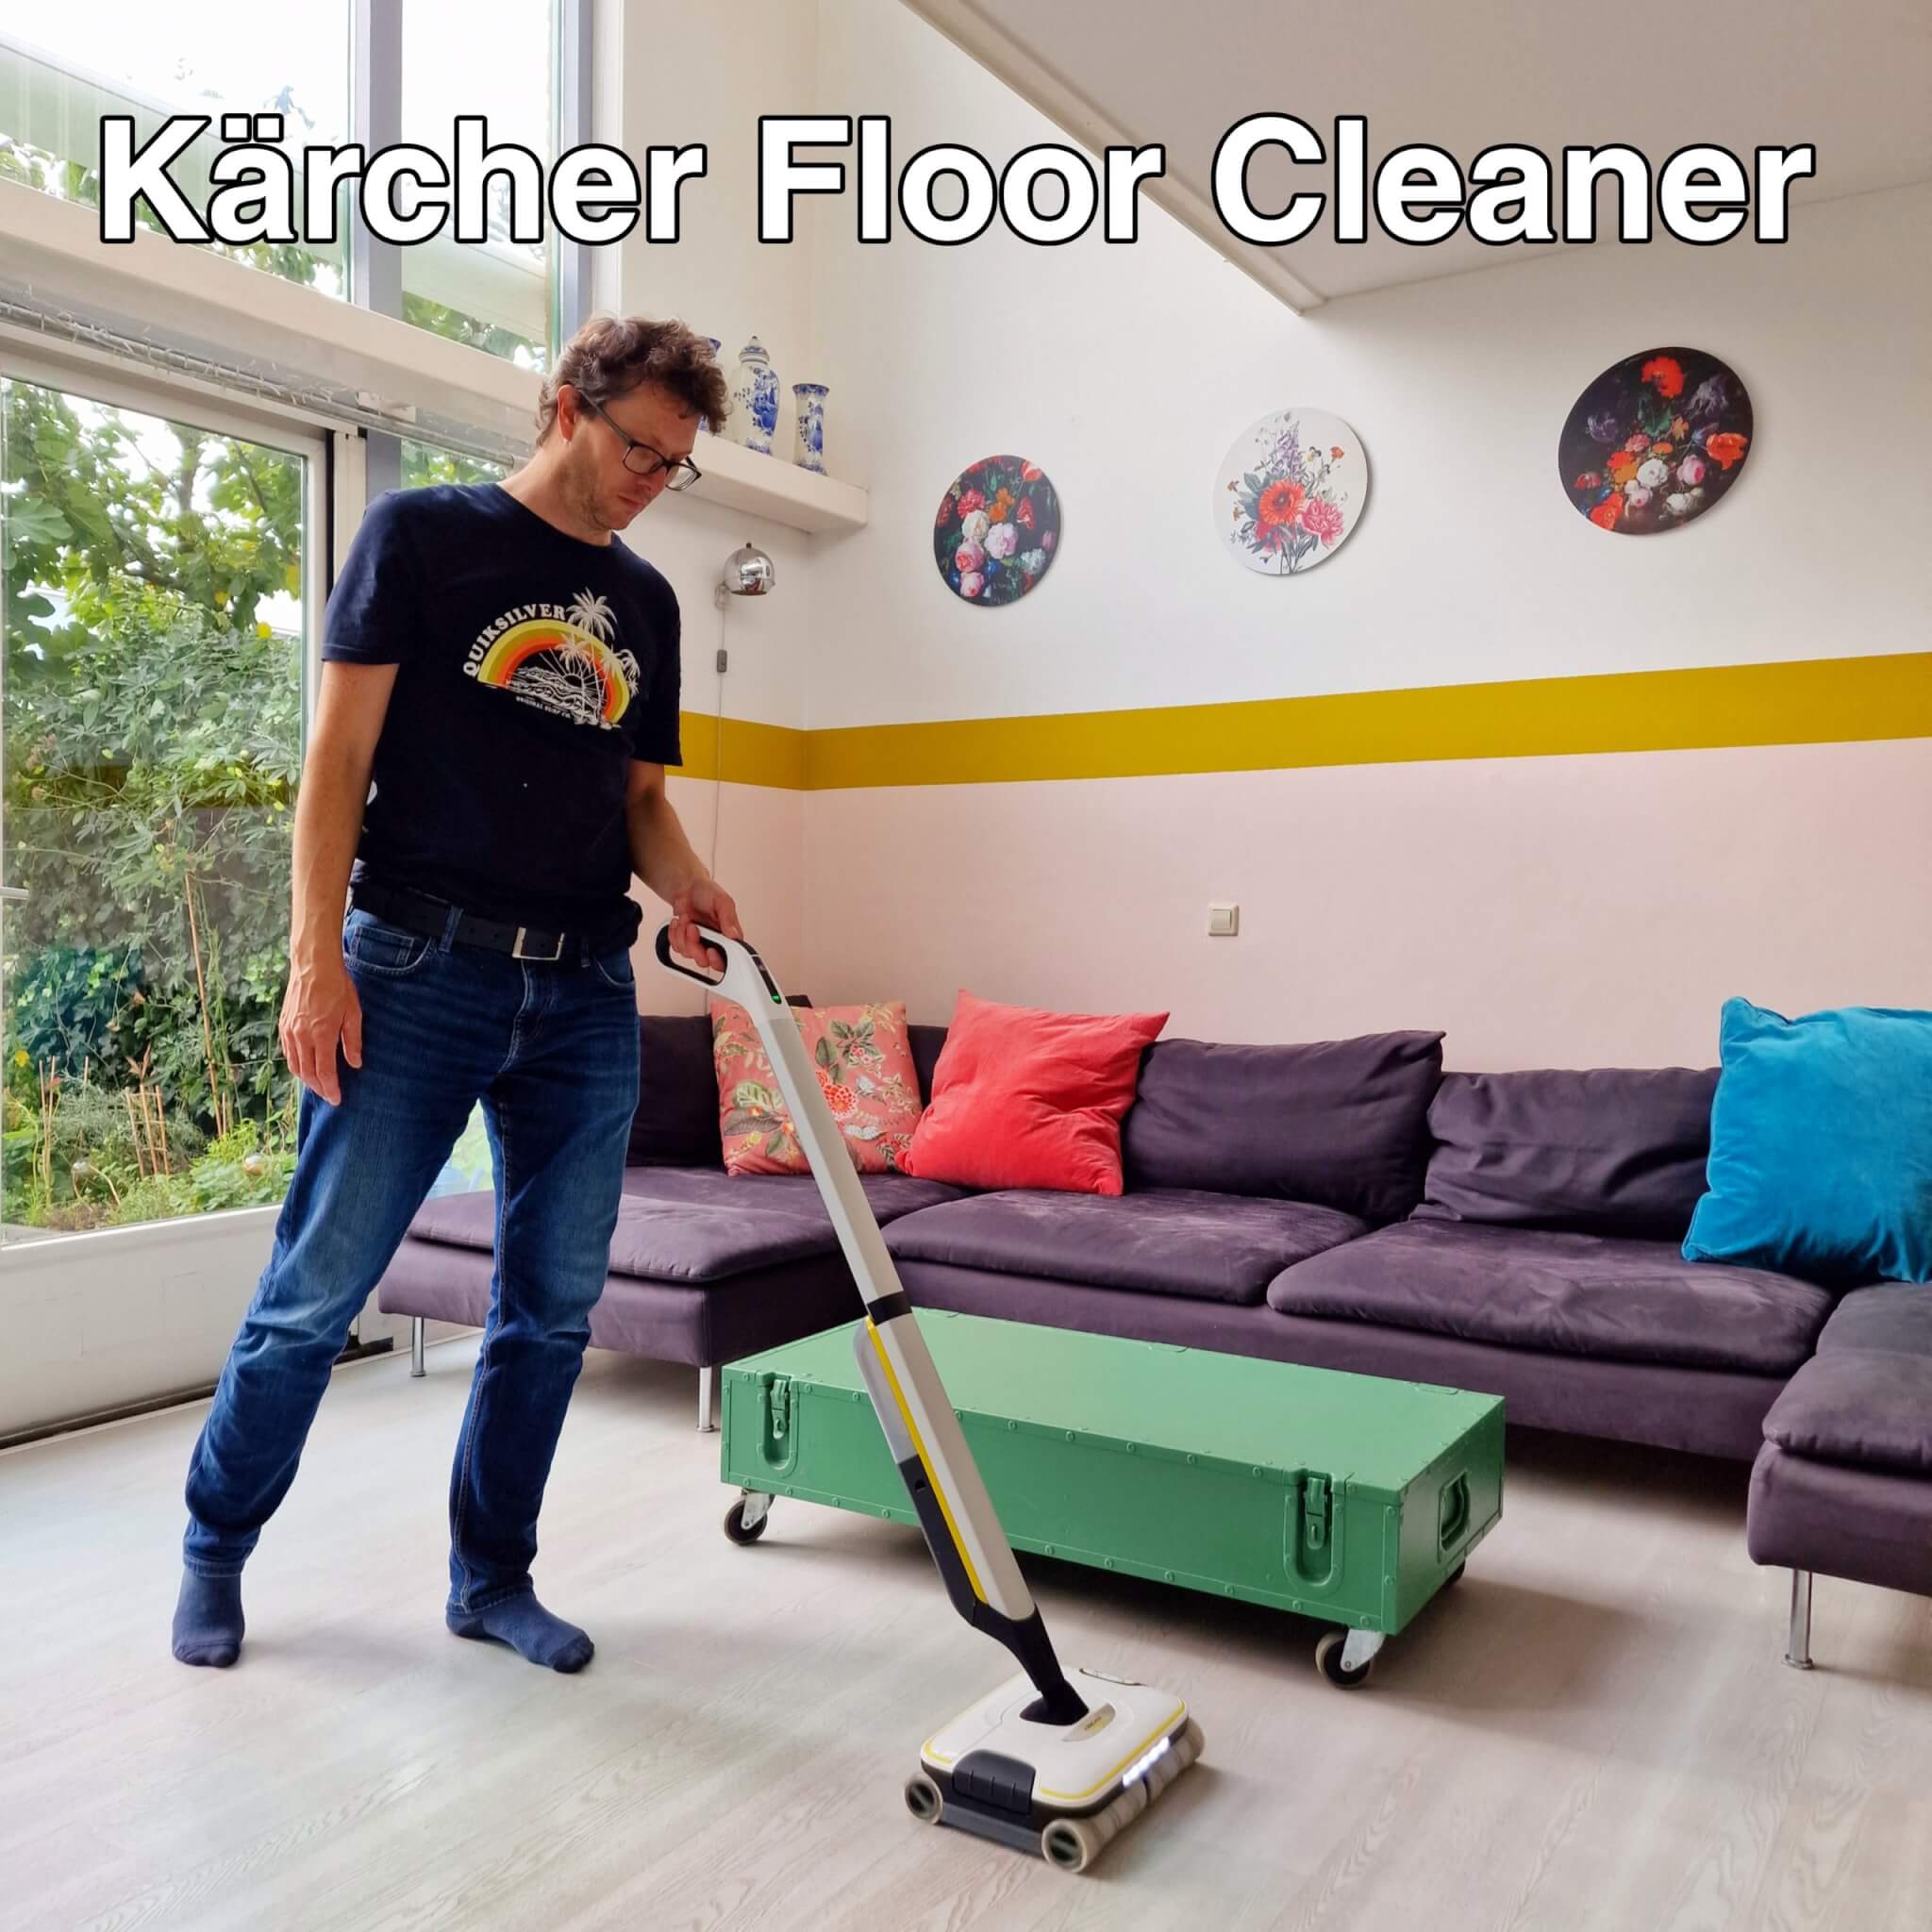 noot vertrekken Tips Kärcher Floor Cleaner: je vloer schoonmaken met één apparaat Leuk met kids